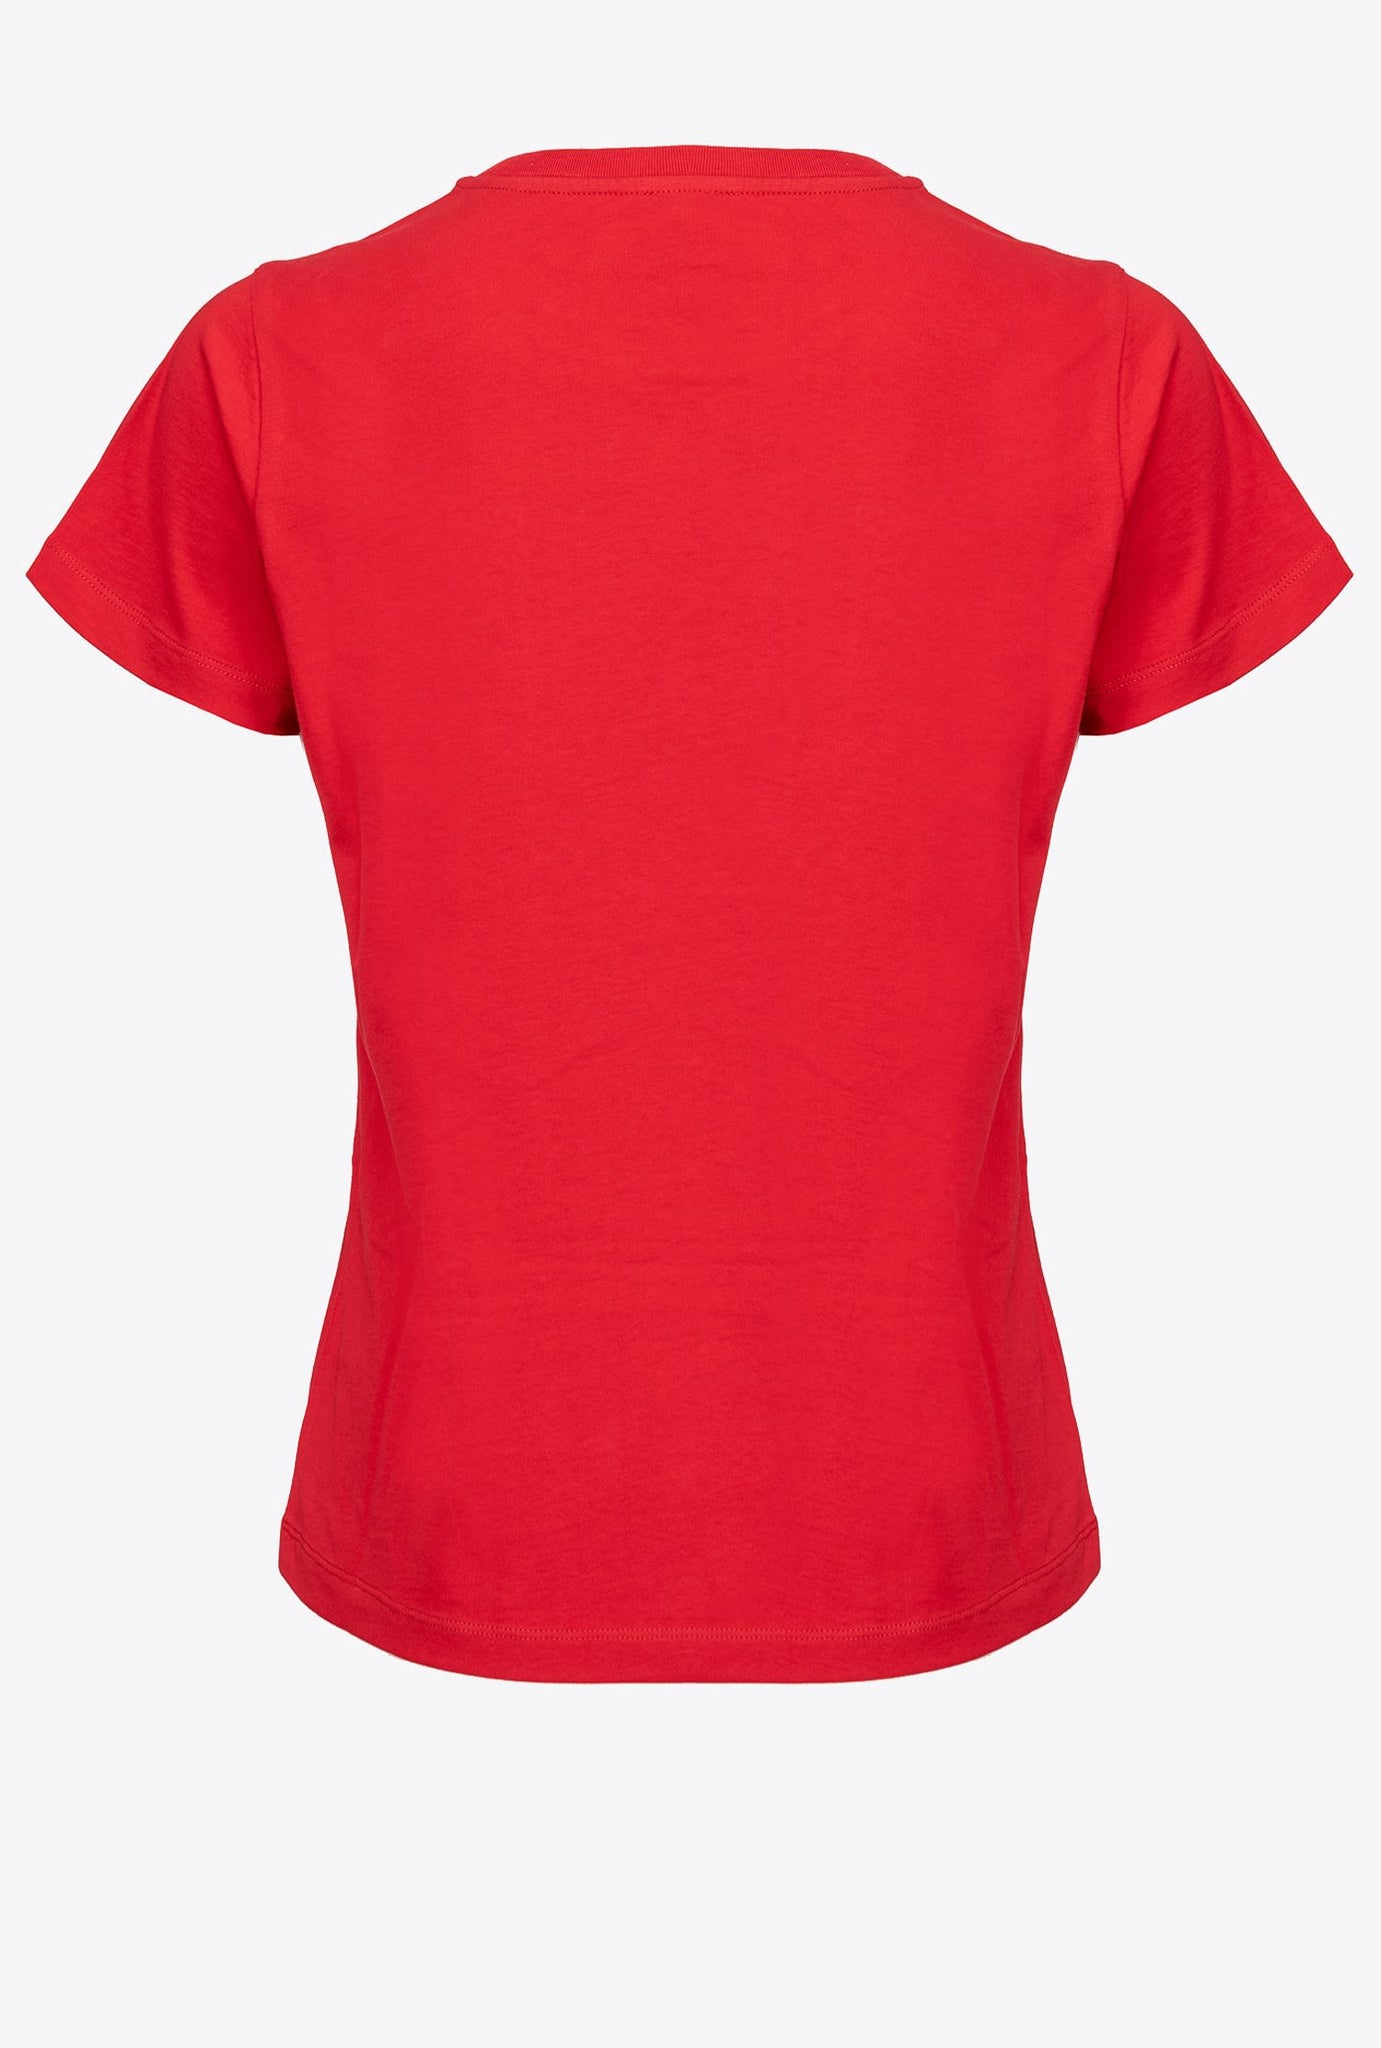 T-Shirt Pinko con Logo / Rosso - Ideal Moda